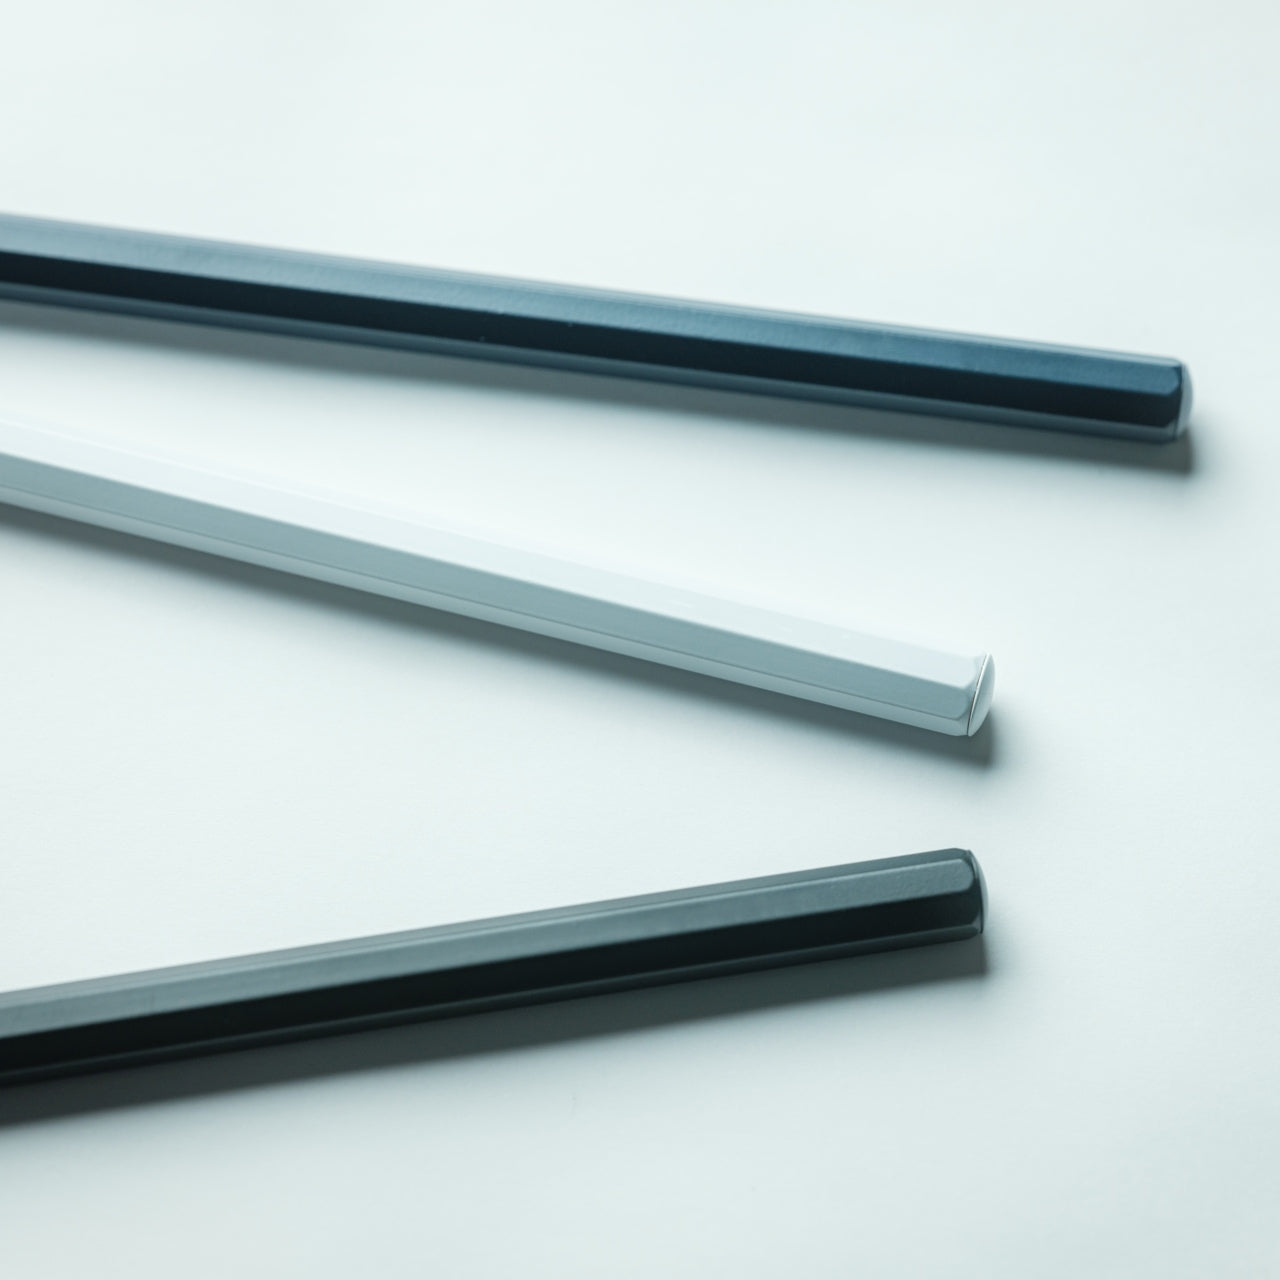 Everlasting All-Metal Pencil – Yanko Design Select